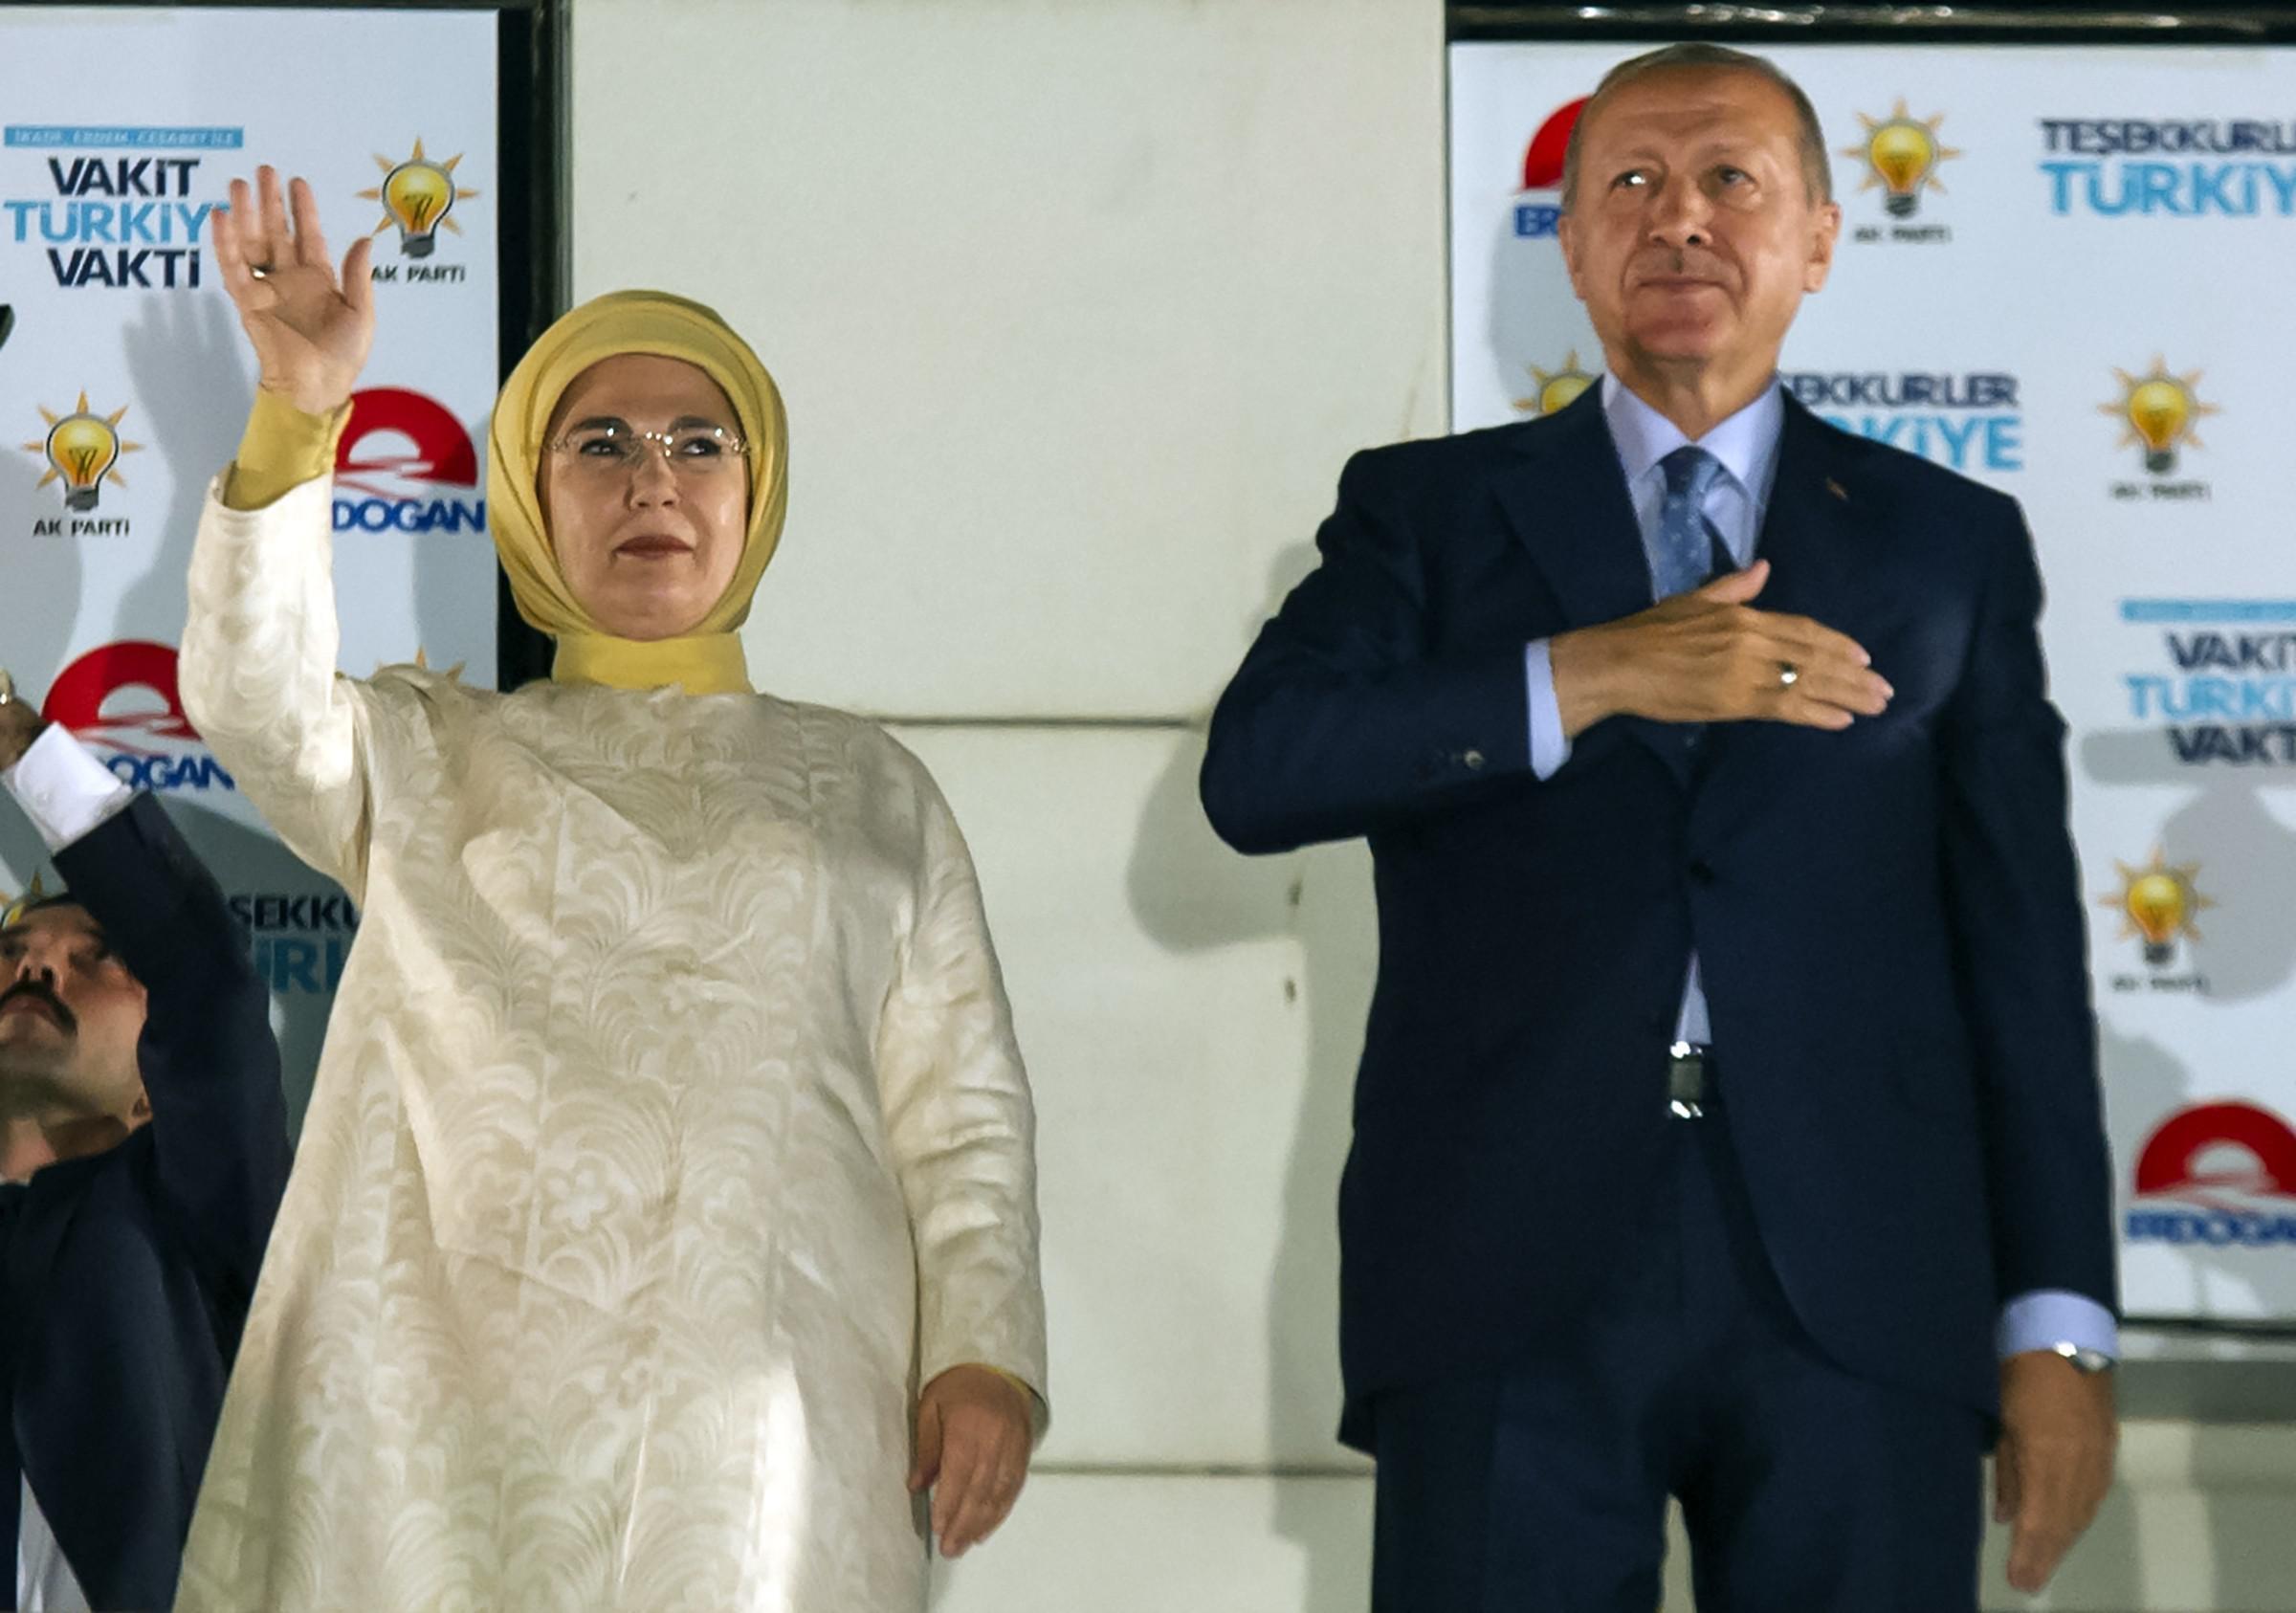 Cumhurbaşkanı Erdoğan: “Milletimizin sandıkta partimize verdiği mesajı da aldık”